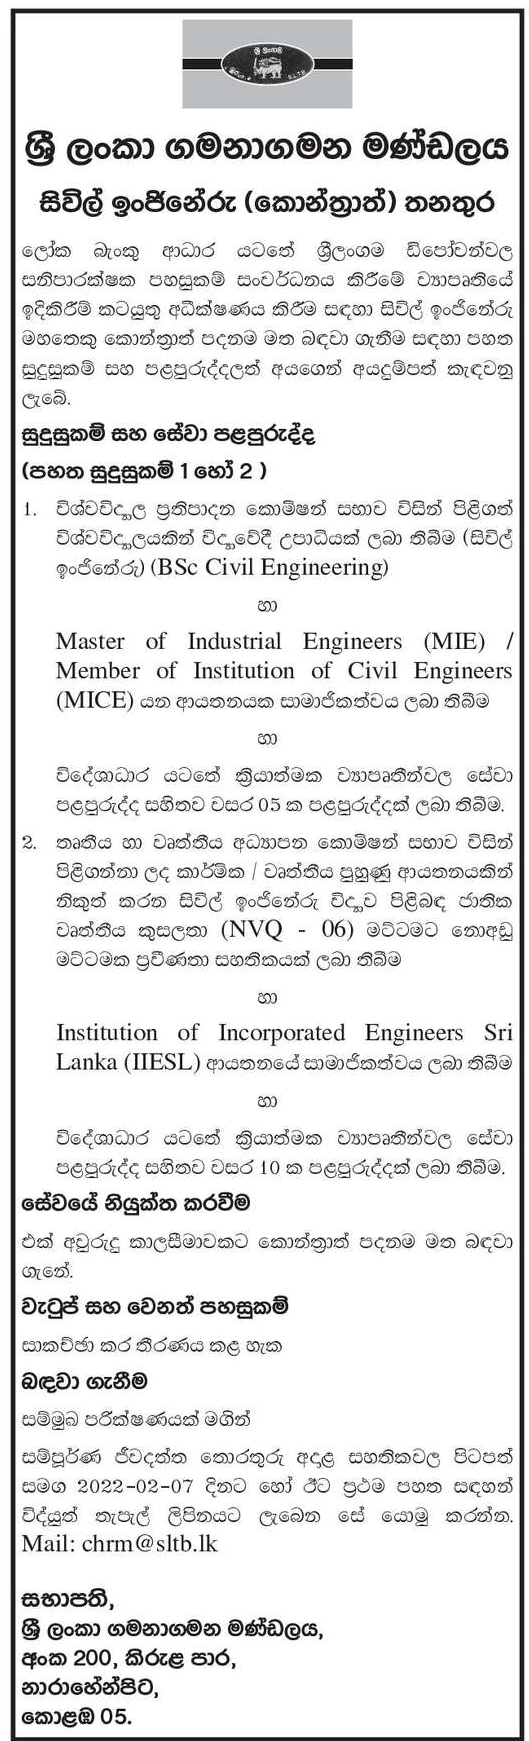 Civil Engineer Job Vacancy in SLTB Sinhala Details